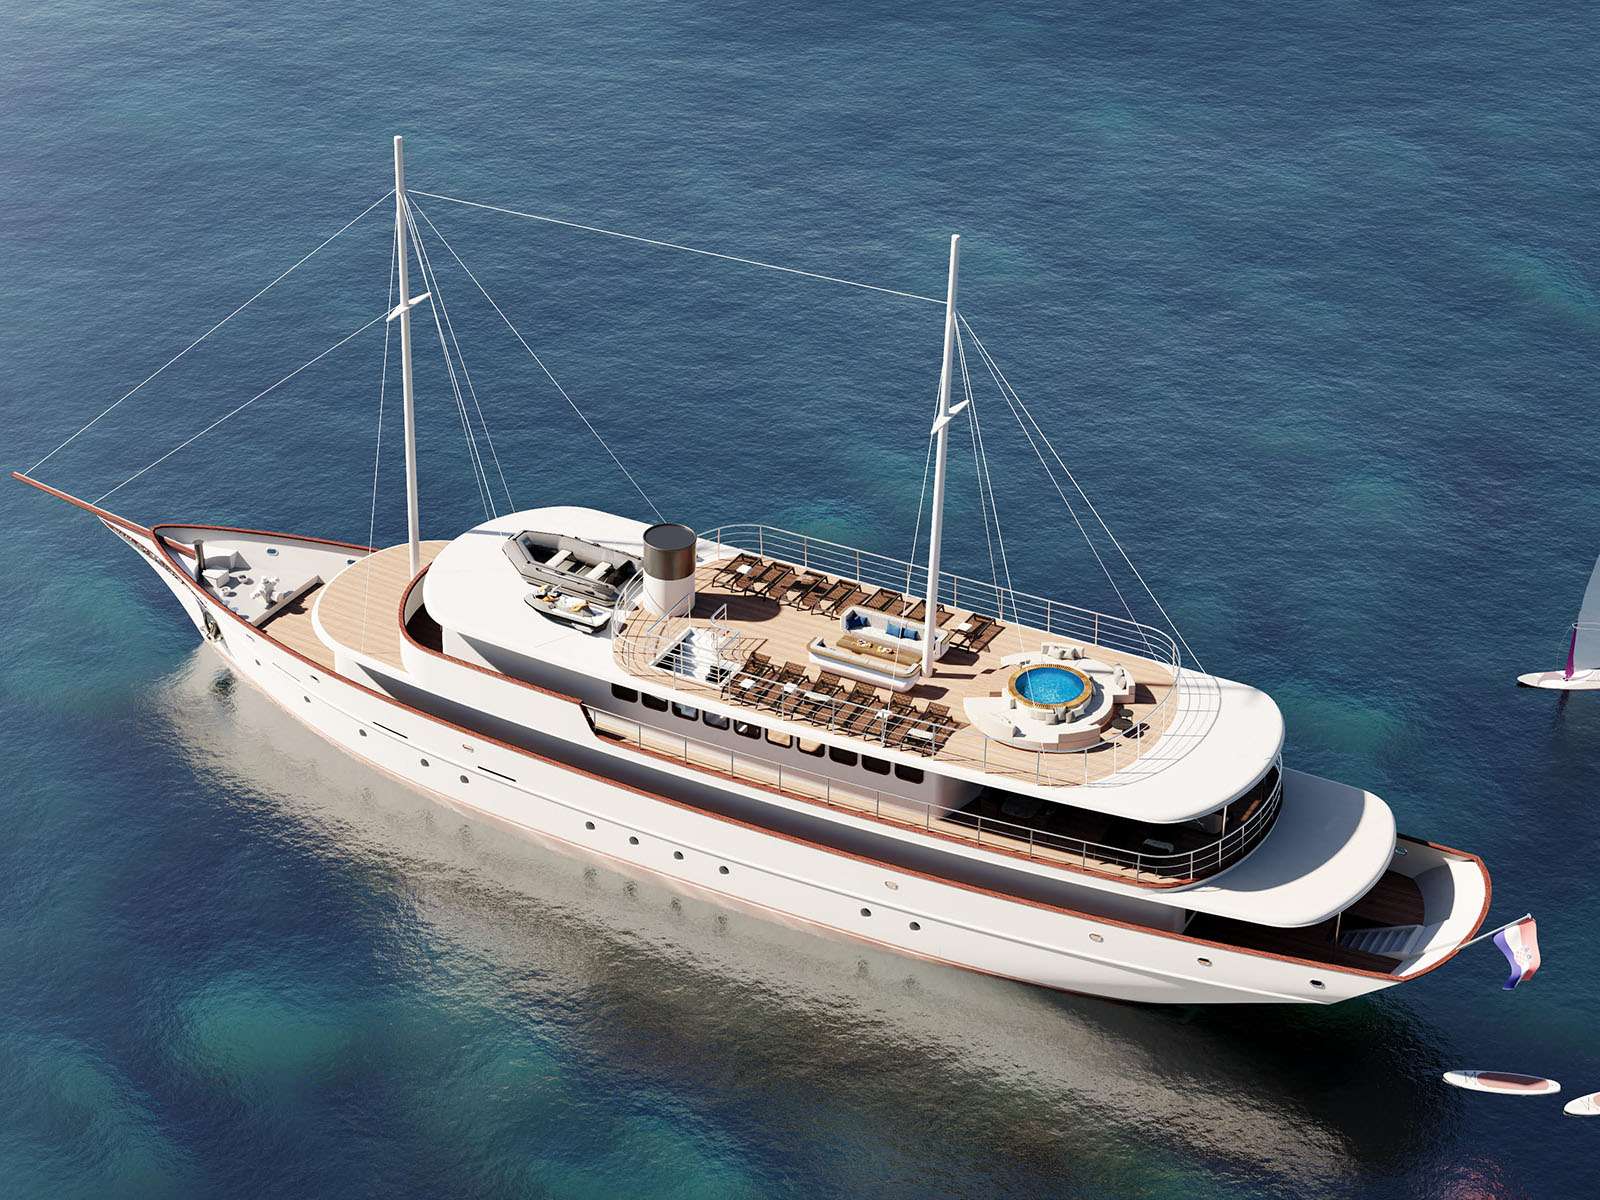 Bellezza - Yacht Charter Opatija & Boat hire in Croatia 2